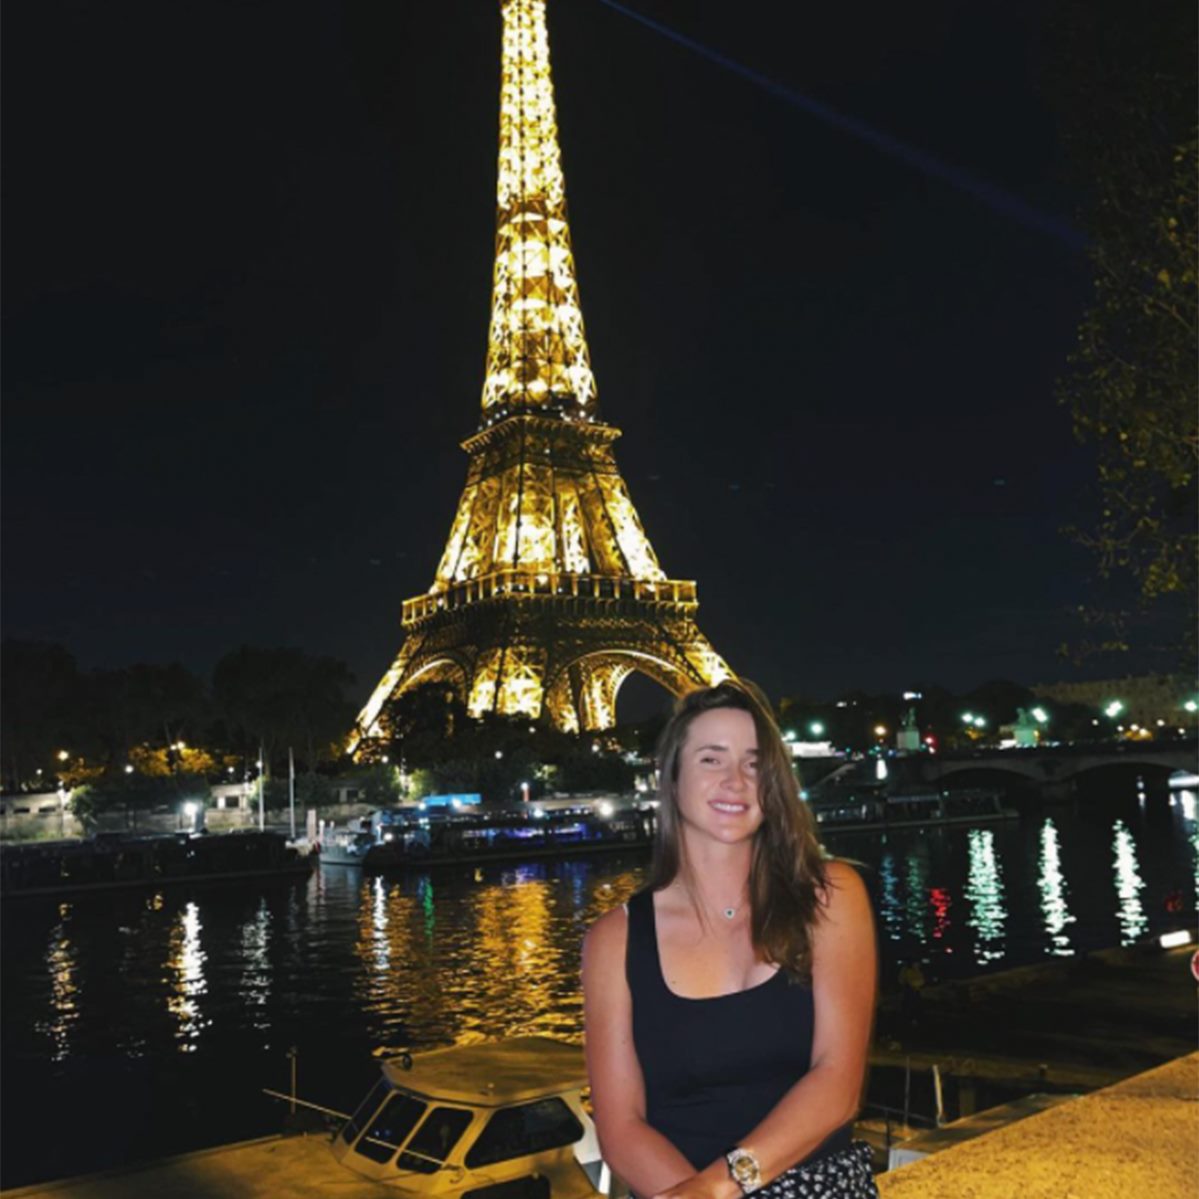 Nóng nhất thể thao tối 21/9: Mỹ nhân tennis Svitolina đẹp rạng ngời ở Paris - 1